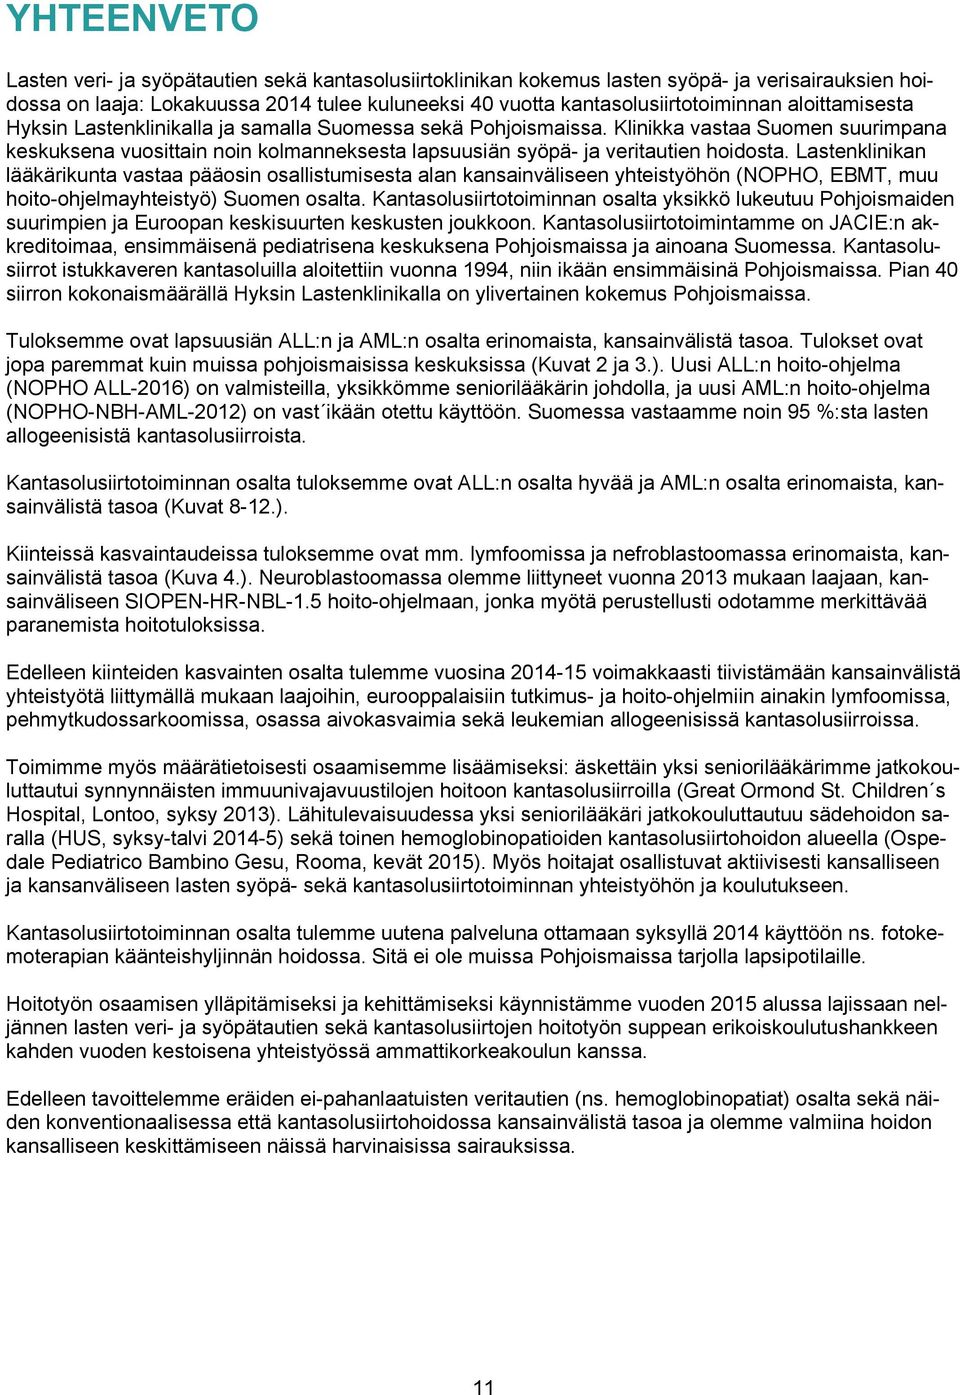 Lastenklinikan lääkärikunta vastaa pääosin osallistumisesta alan kansainväliseen yhteistyöhön (NOPHO, EBMT, muu hoito-ohjelmayhteistyö) Suomen osalta.